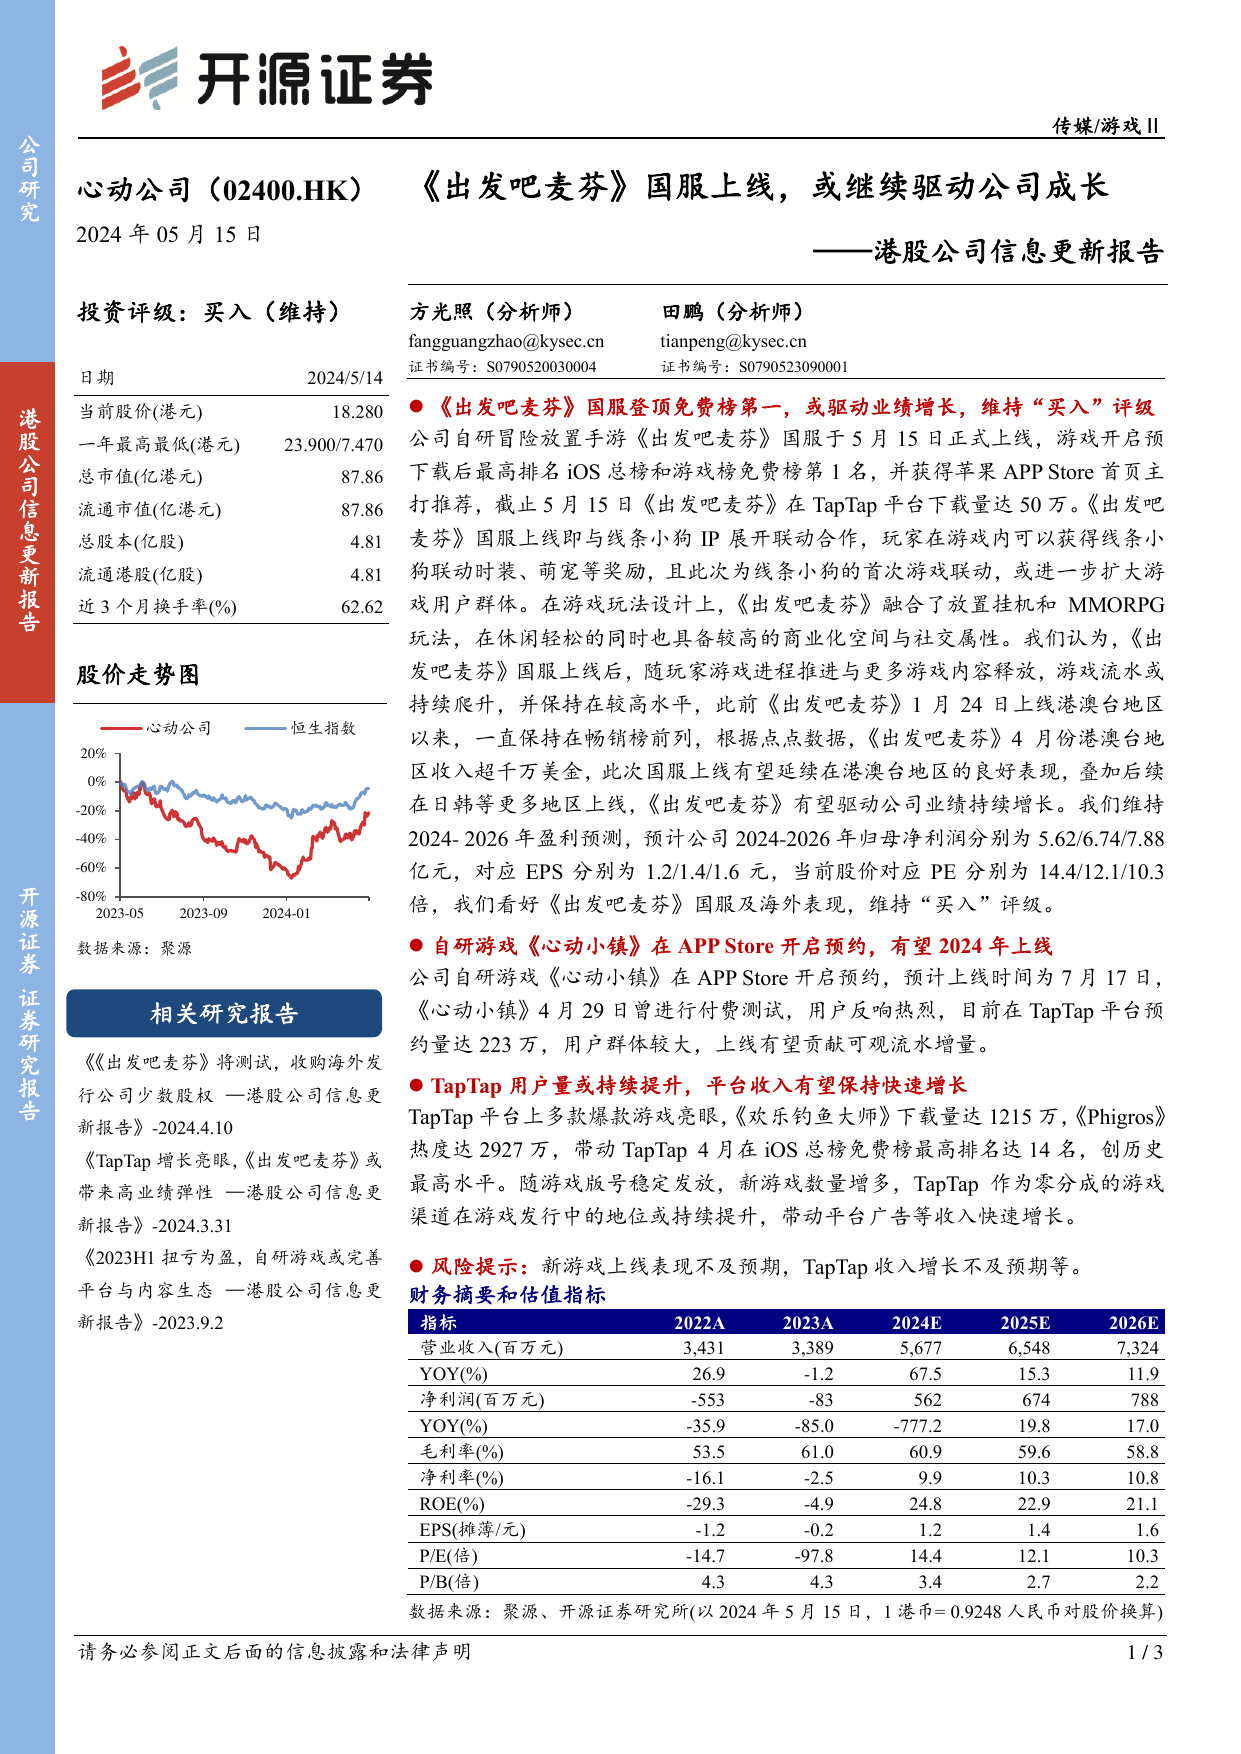 心动公司(02400.HK)港股公司信息更新报告：《出发吧麦芬》国服上线，或继续驱动公司成长.pdf